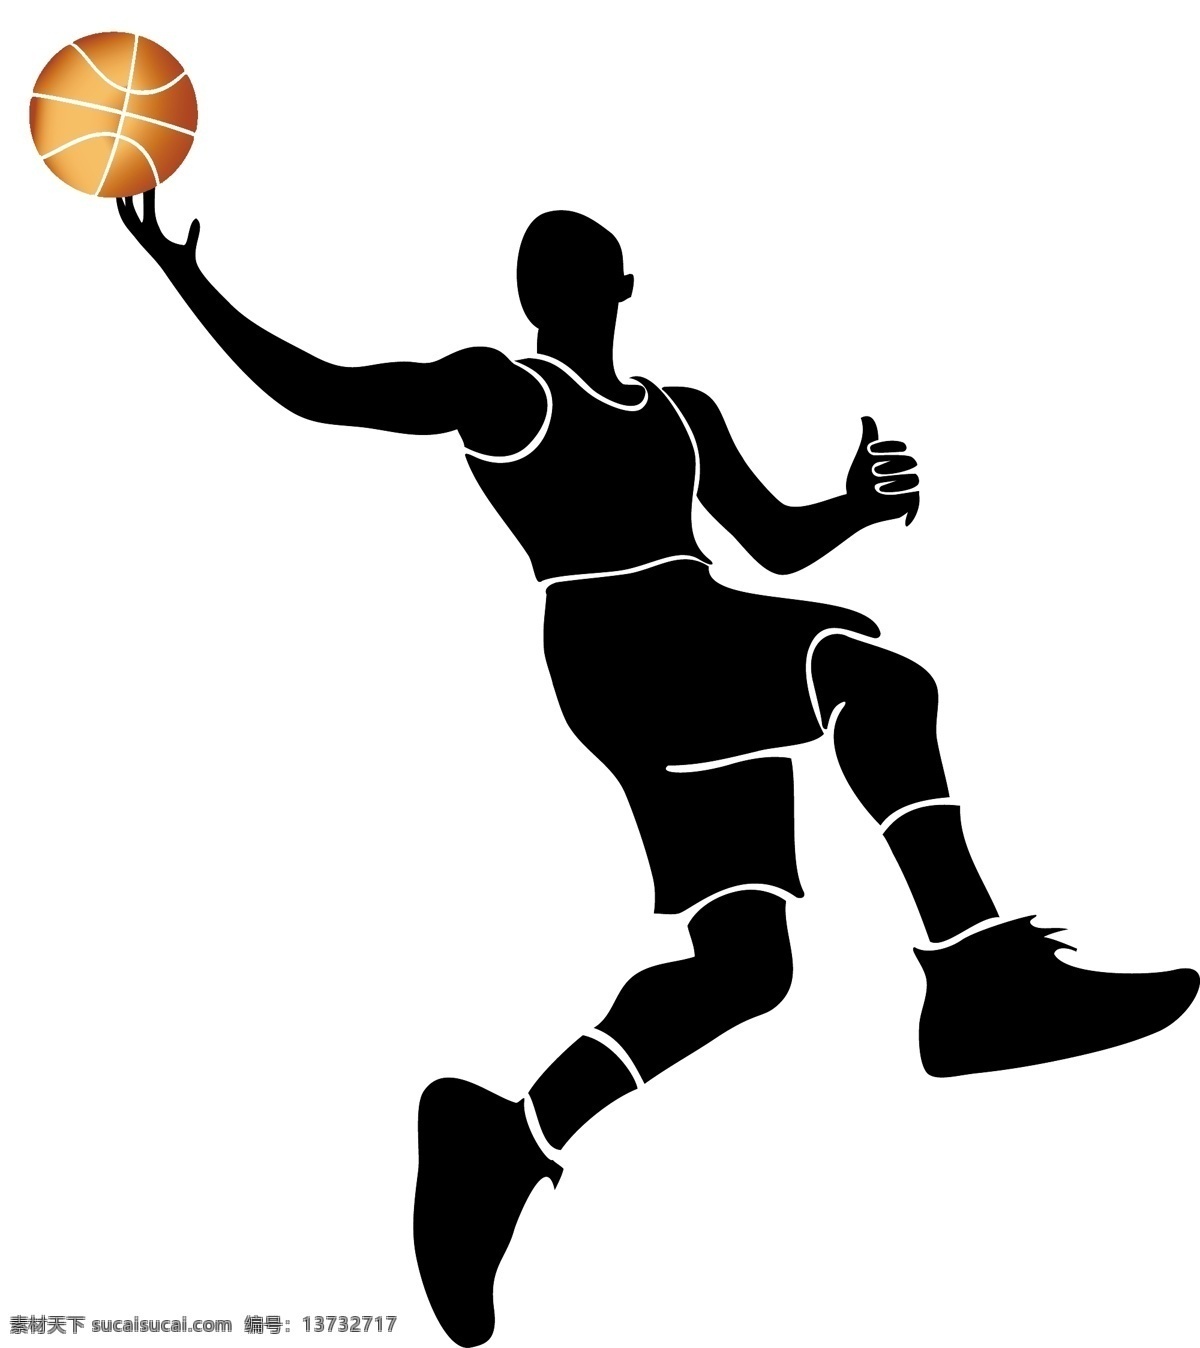 打篮球剪影 打篮球 剪影 打篮球标志 篮球选手标志 篮球选手 共享设计矢量 人物图库 职业人物